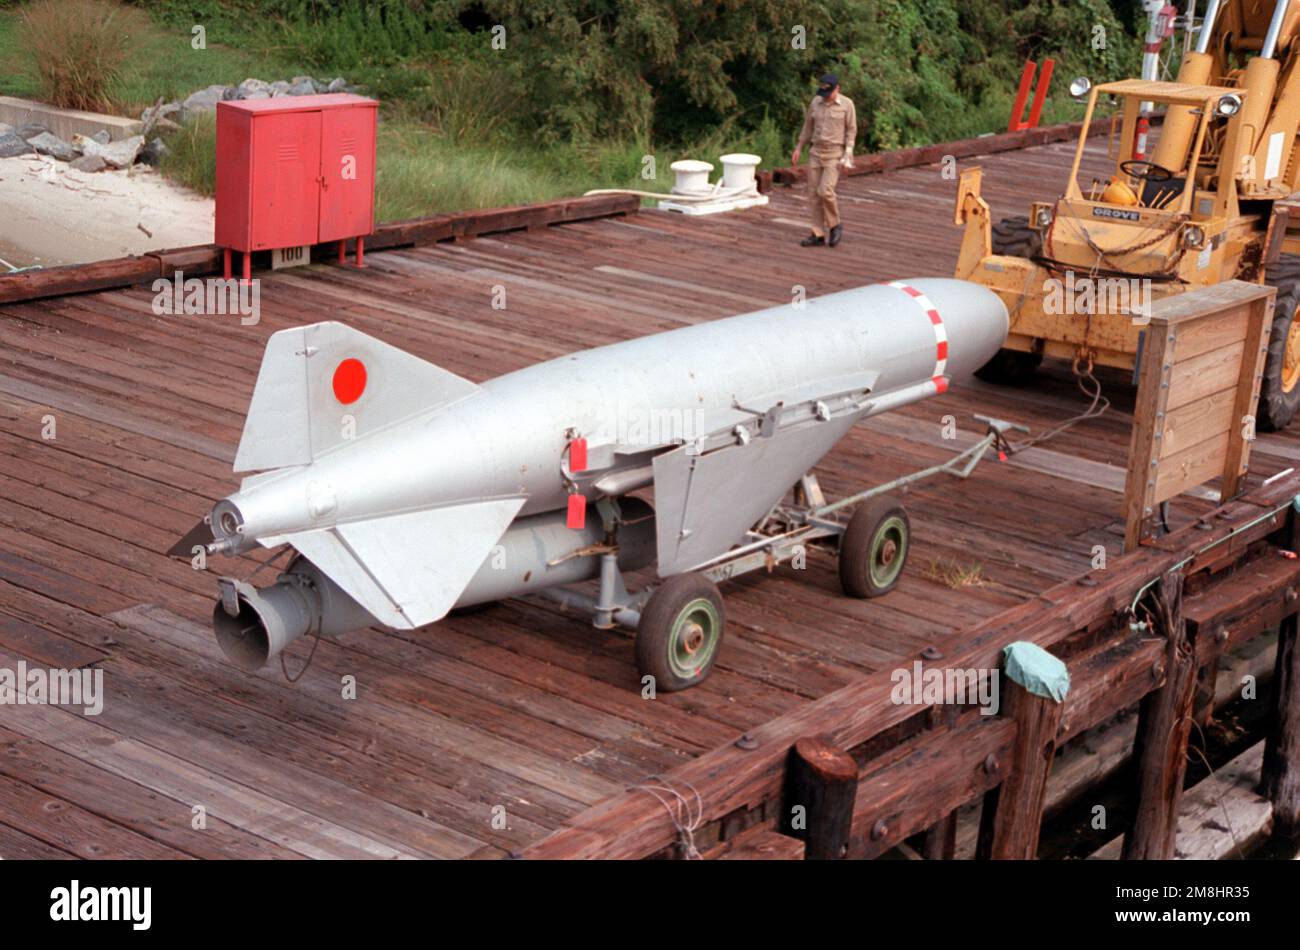 A P-15 SS-N-2c Styx SSM de la corvette soviétique de la classe Tarantul I USNS HIDDENSEE (185NS9201). Ce missile développé par l'Union soviétique est entré en service opérationnel pour la première fois en 1973. Il utilise un booster de carburant solide pour la phase de lancement/accélération et un turbojet de carburant liquide pour la phase de croisière. Le missile de 21 pieds de long pèse 5 570 livres et possède une tête de guerre de 1 100 livres. Il possède une portée de 45 milles marins et utilise un système de homing radar-infrarouge actif. Pays: Solomons Banque D'Images